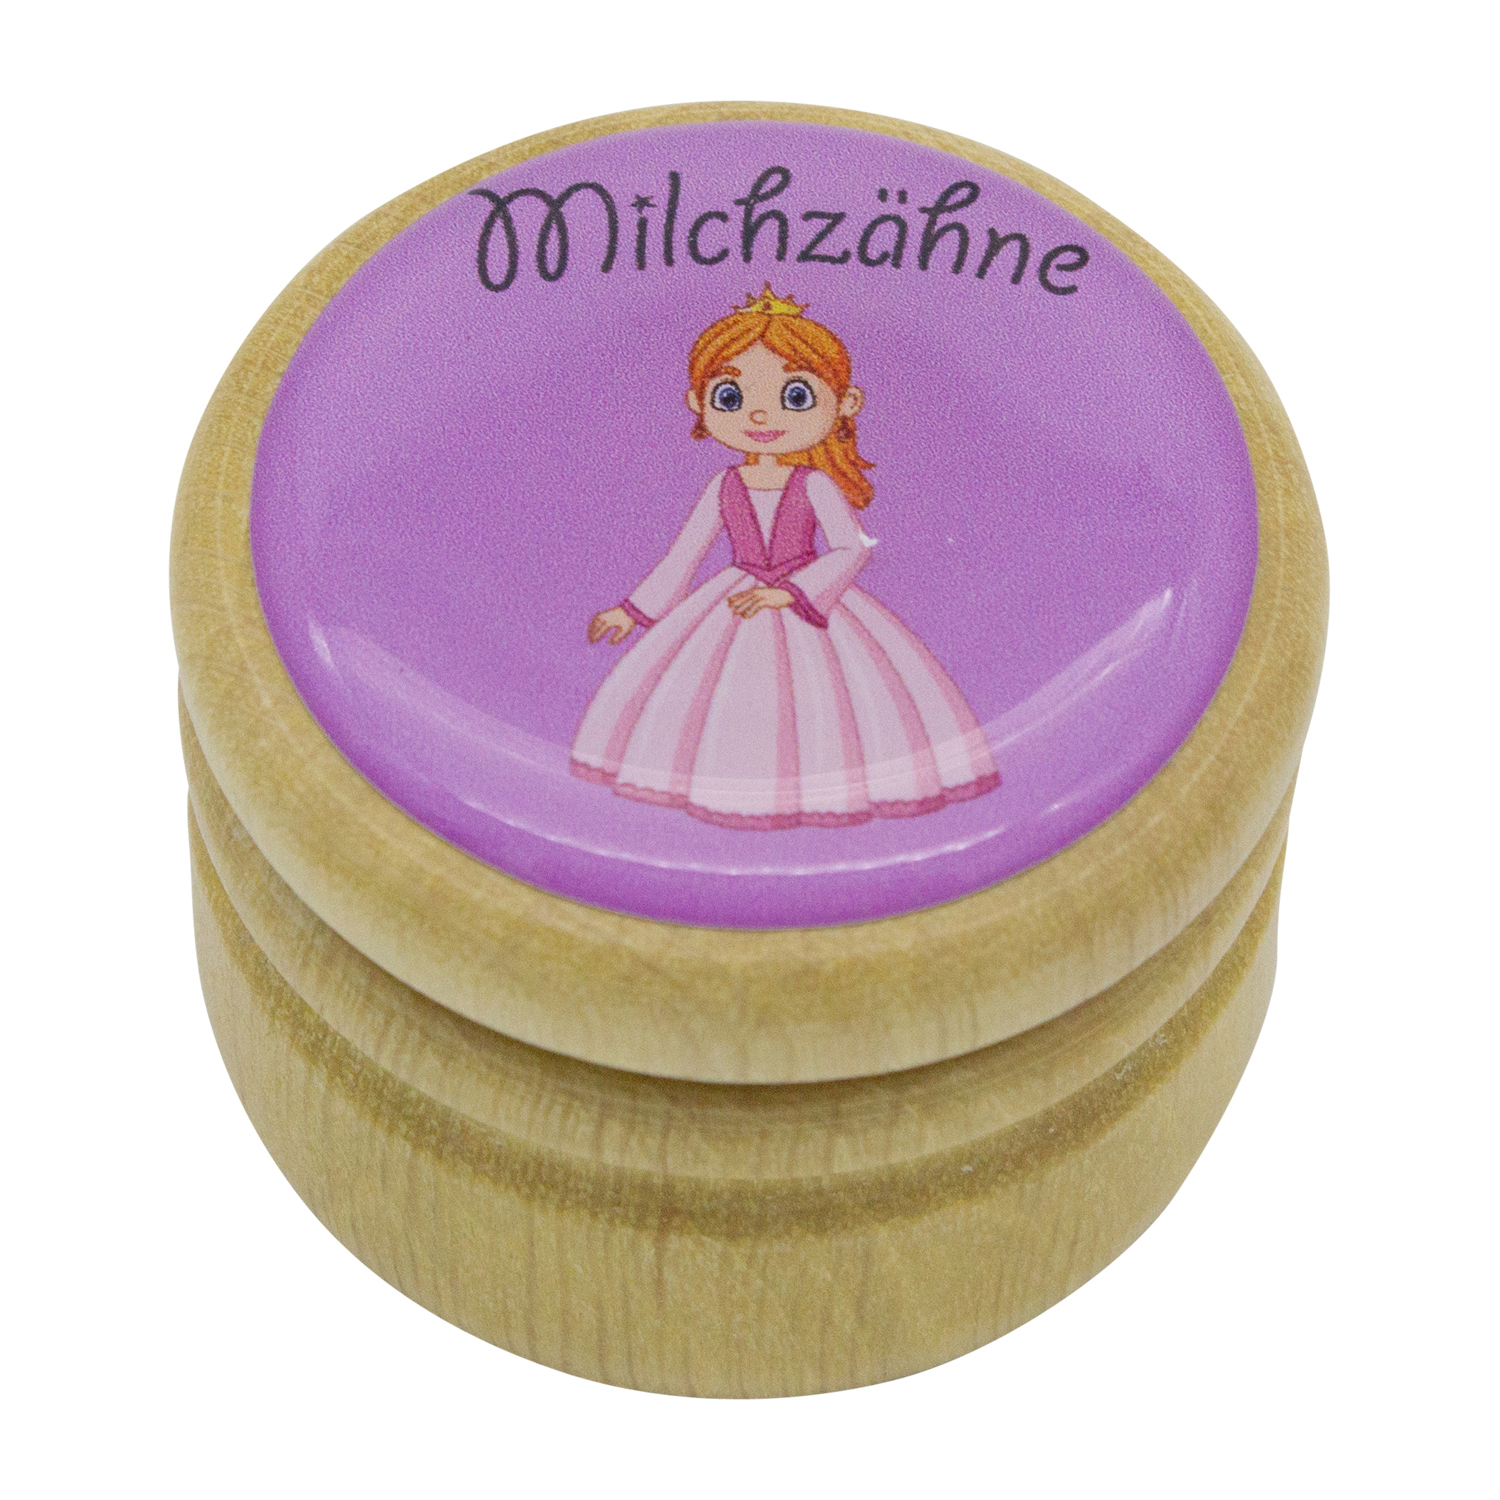 Milchzahndose Prinzessin Zahndose Milchzähne Bilderdose aus Holz mit Drehverschluss 44 mm ( Prinzessin) - 7026